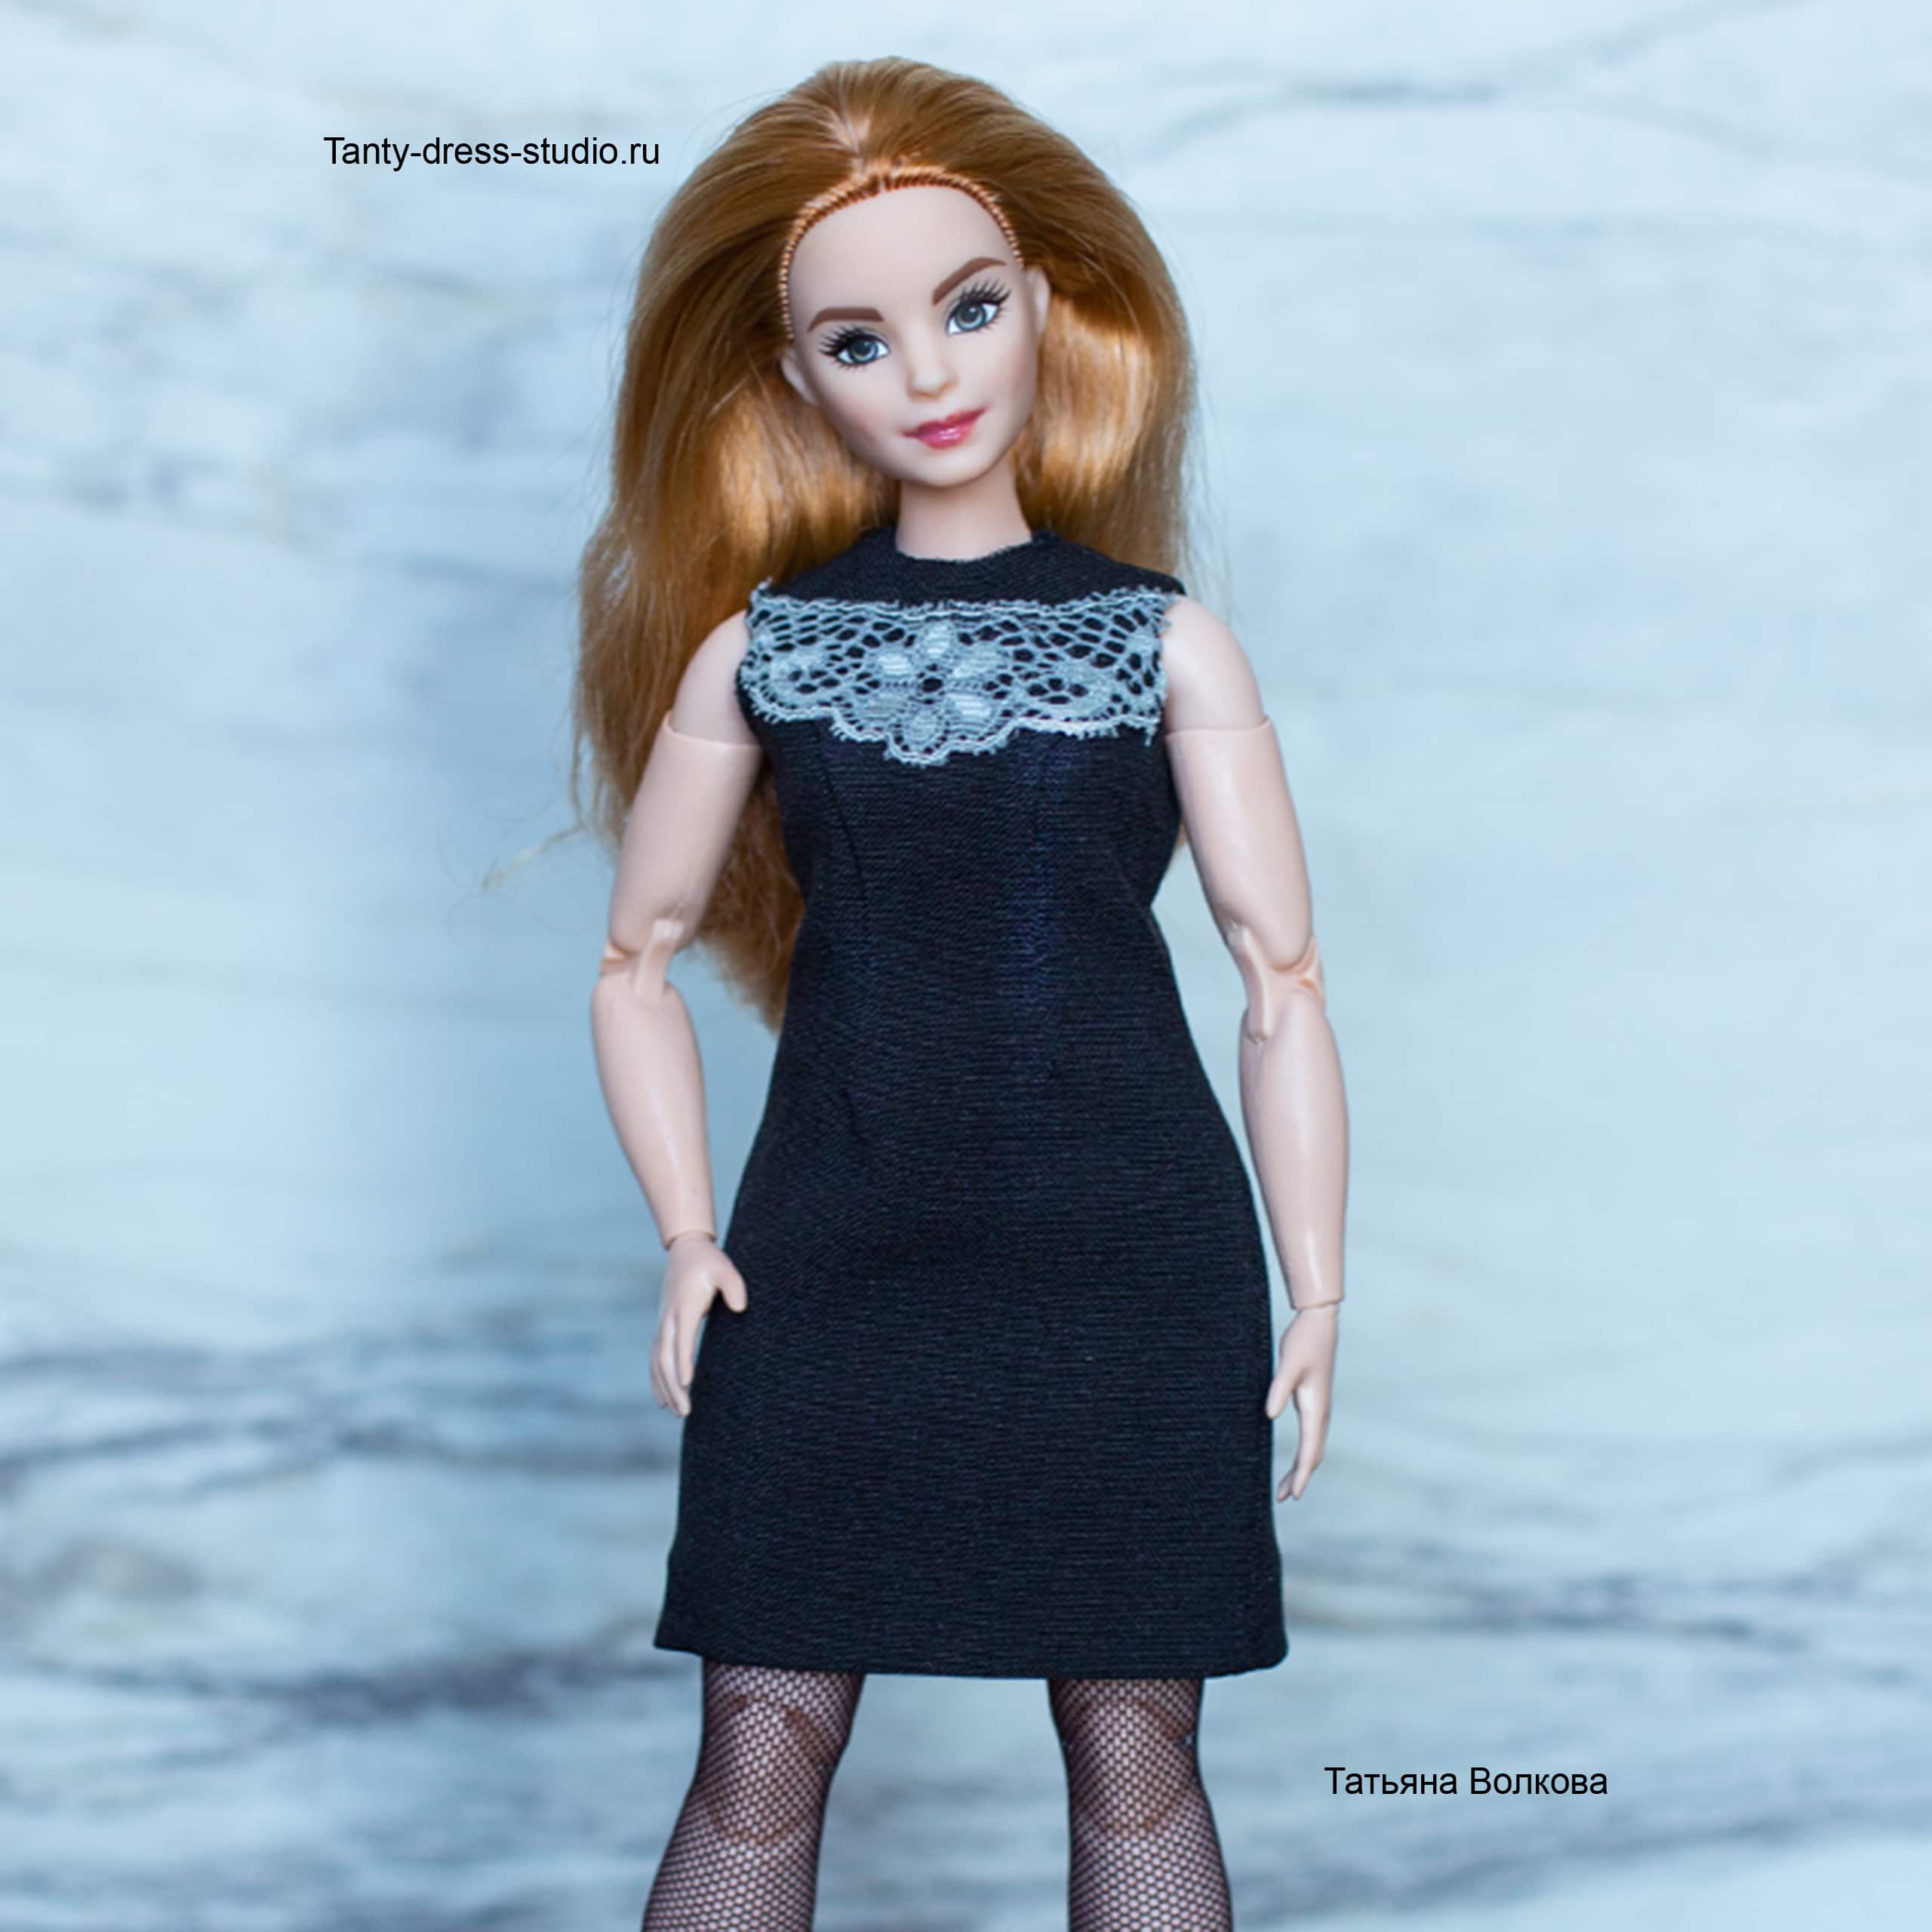 Выкройки одежды для Барби: готовые и простые модели